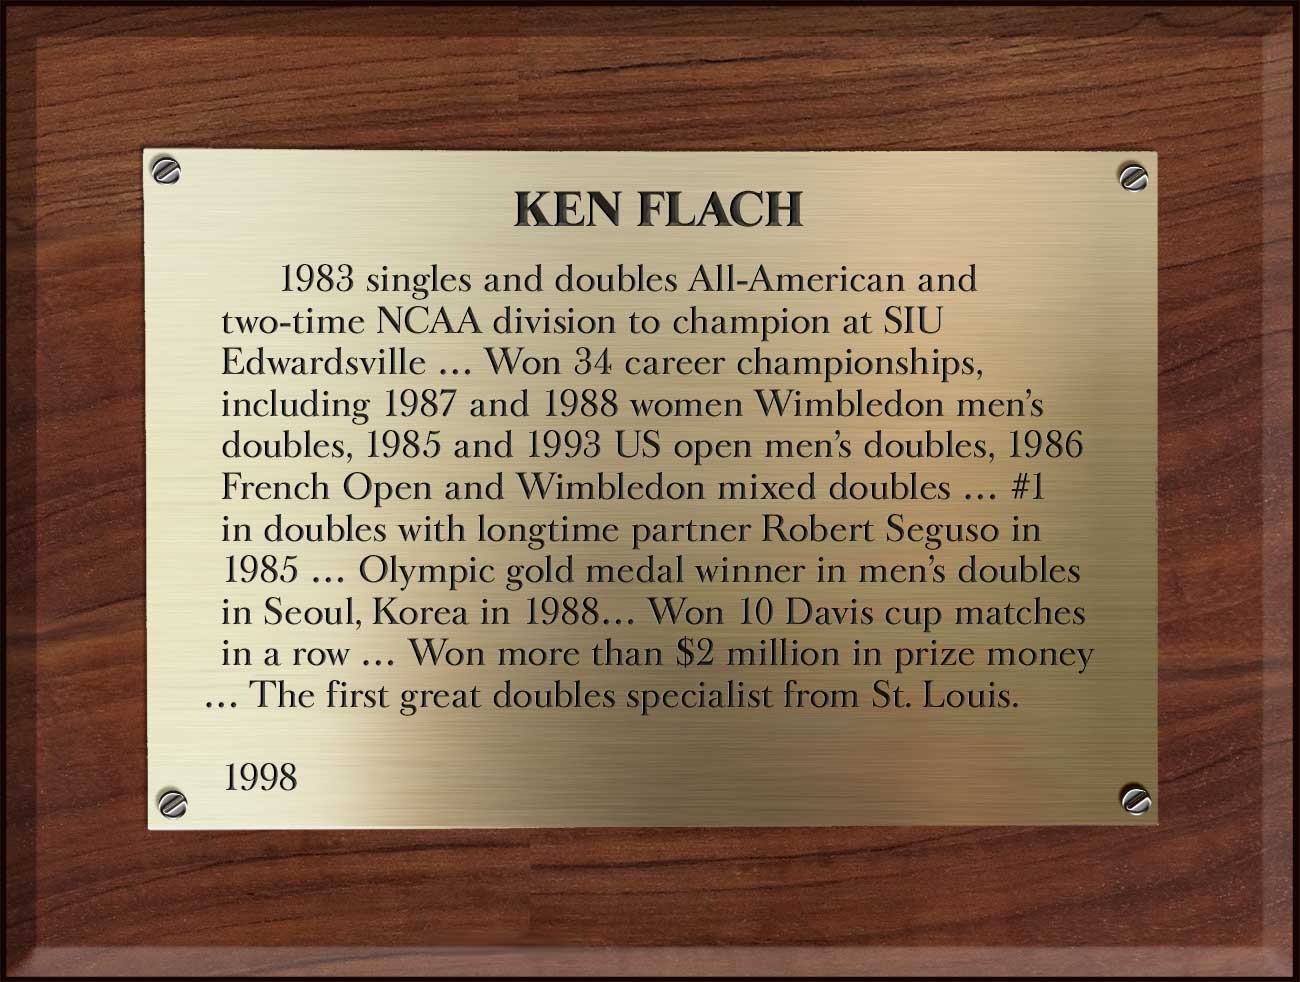 Ken Flach